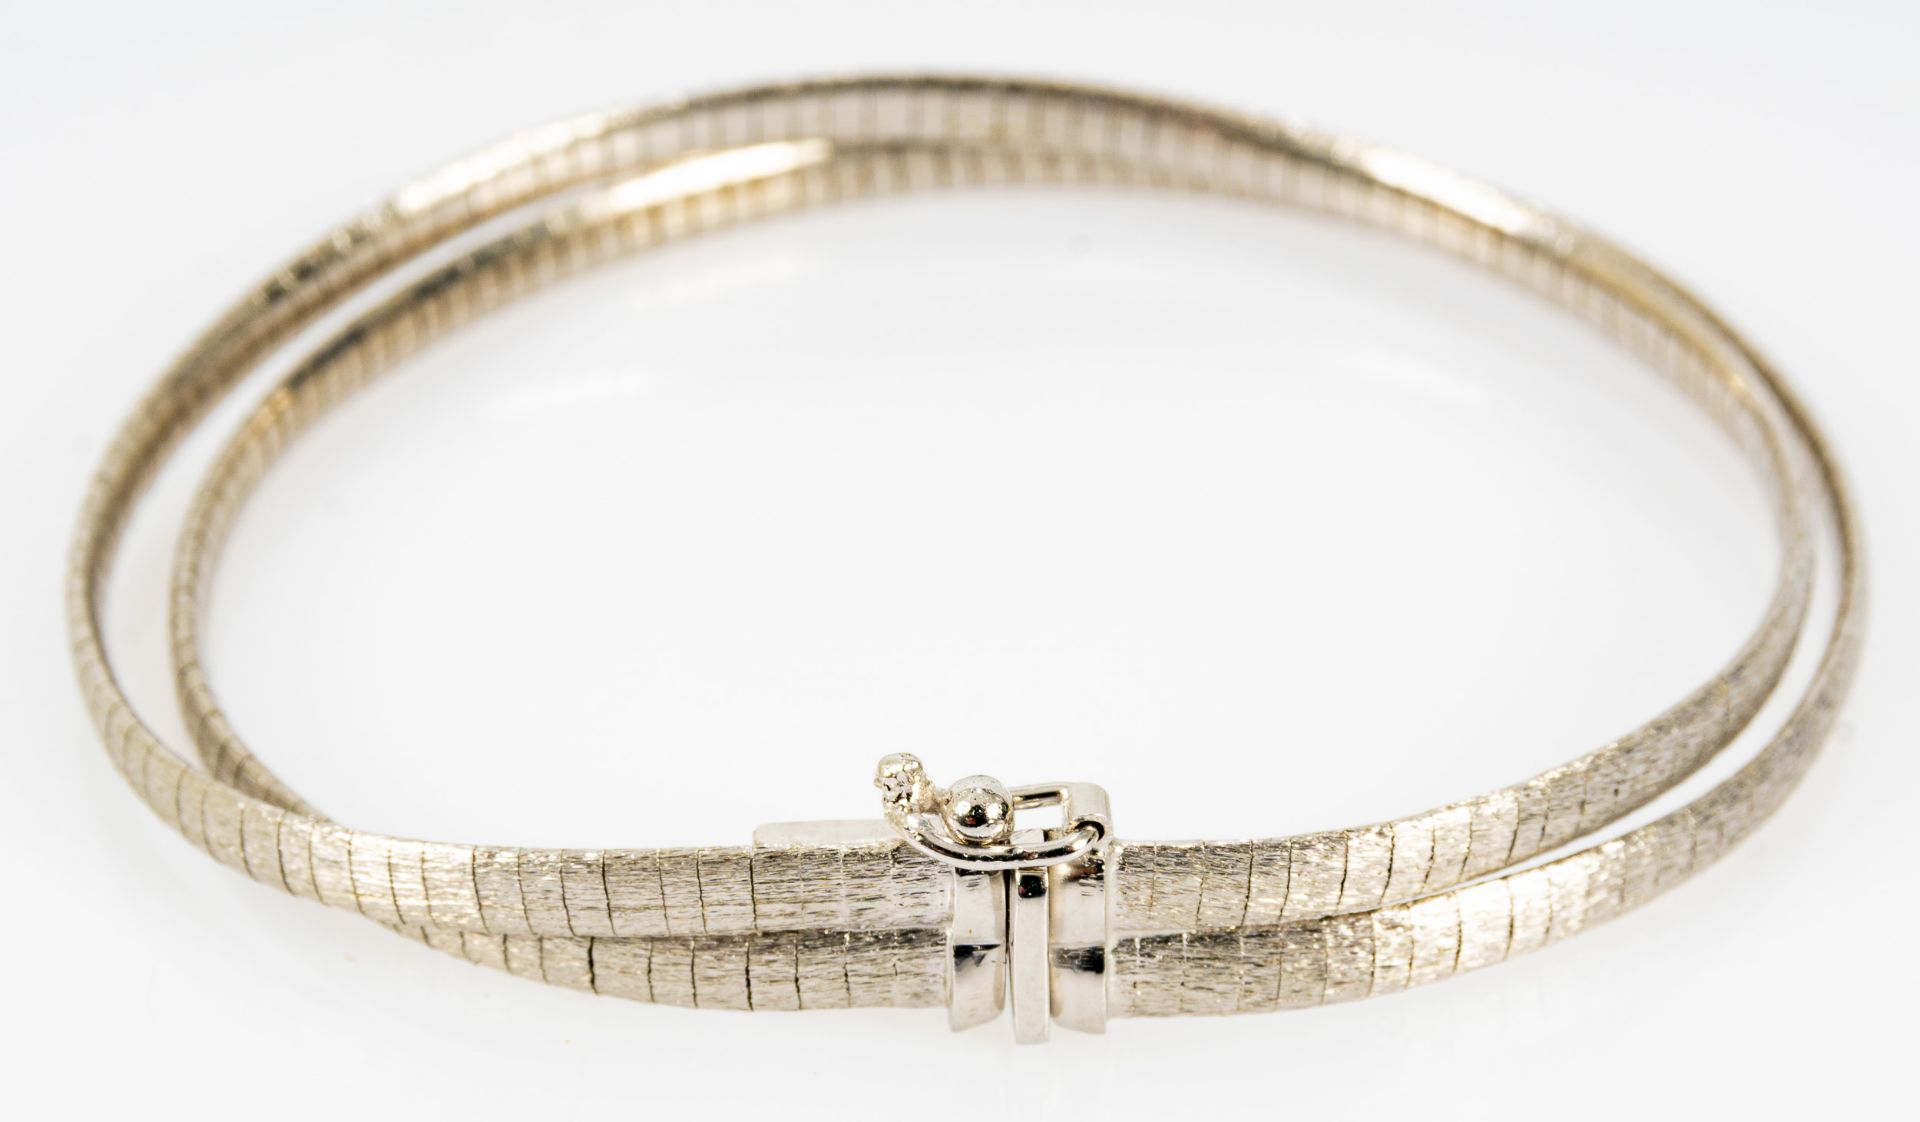 2strängiges Armband, 65% Silberlegierung, Länge ca. 18,5 cm; Sicherheitsverschluss, schöner Erhalt. - Image 2 of 6